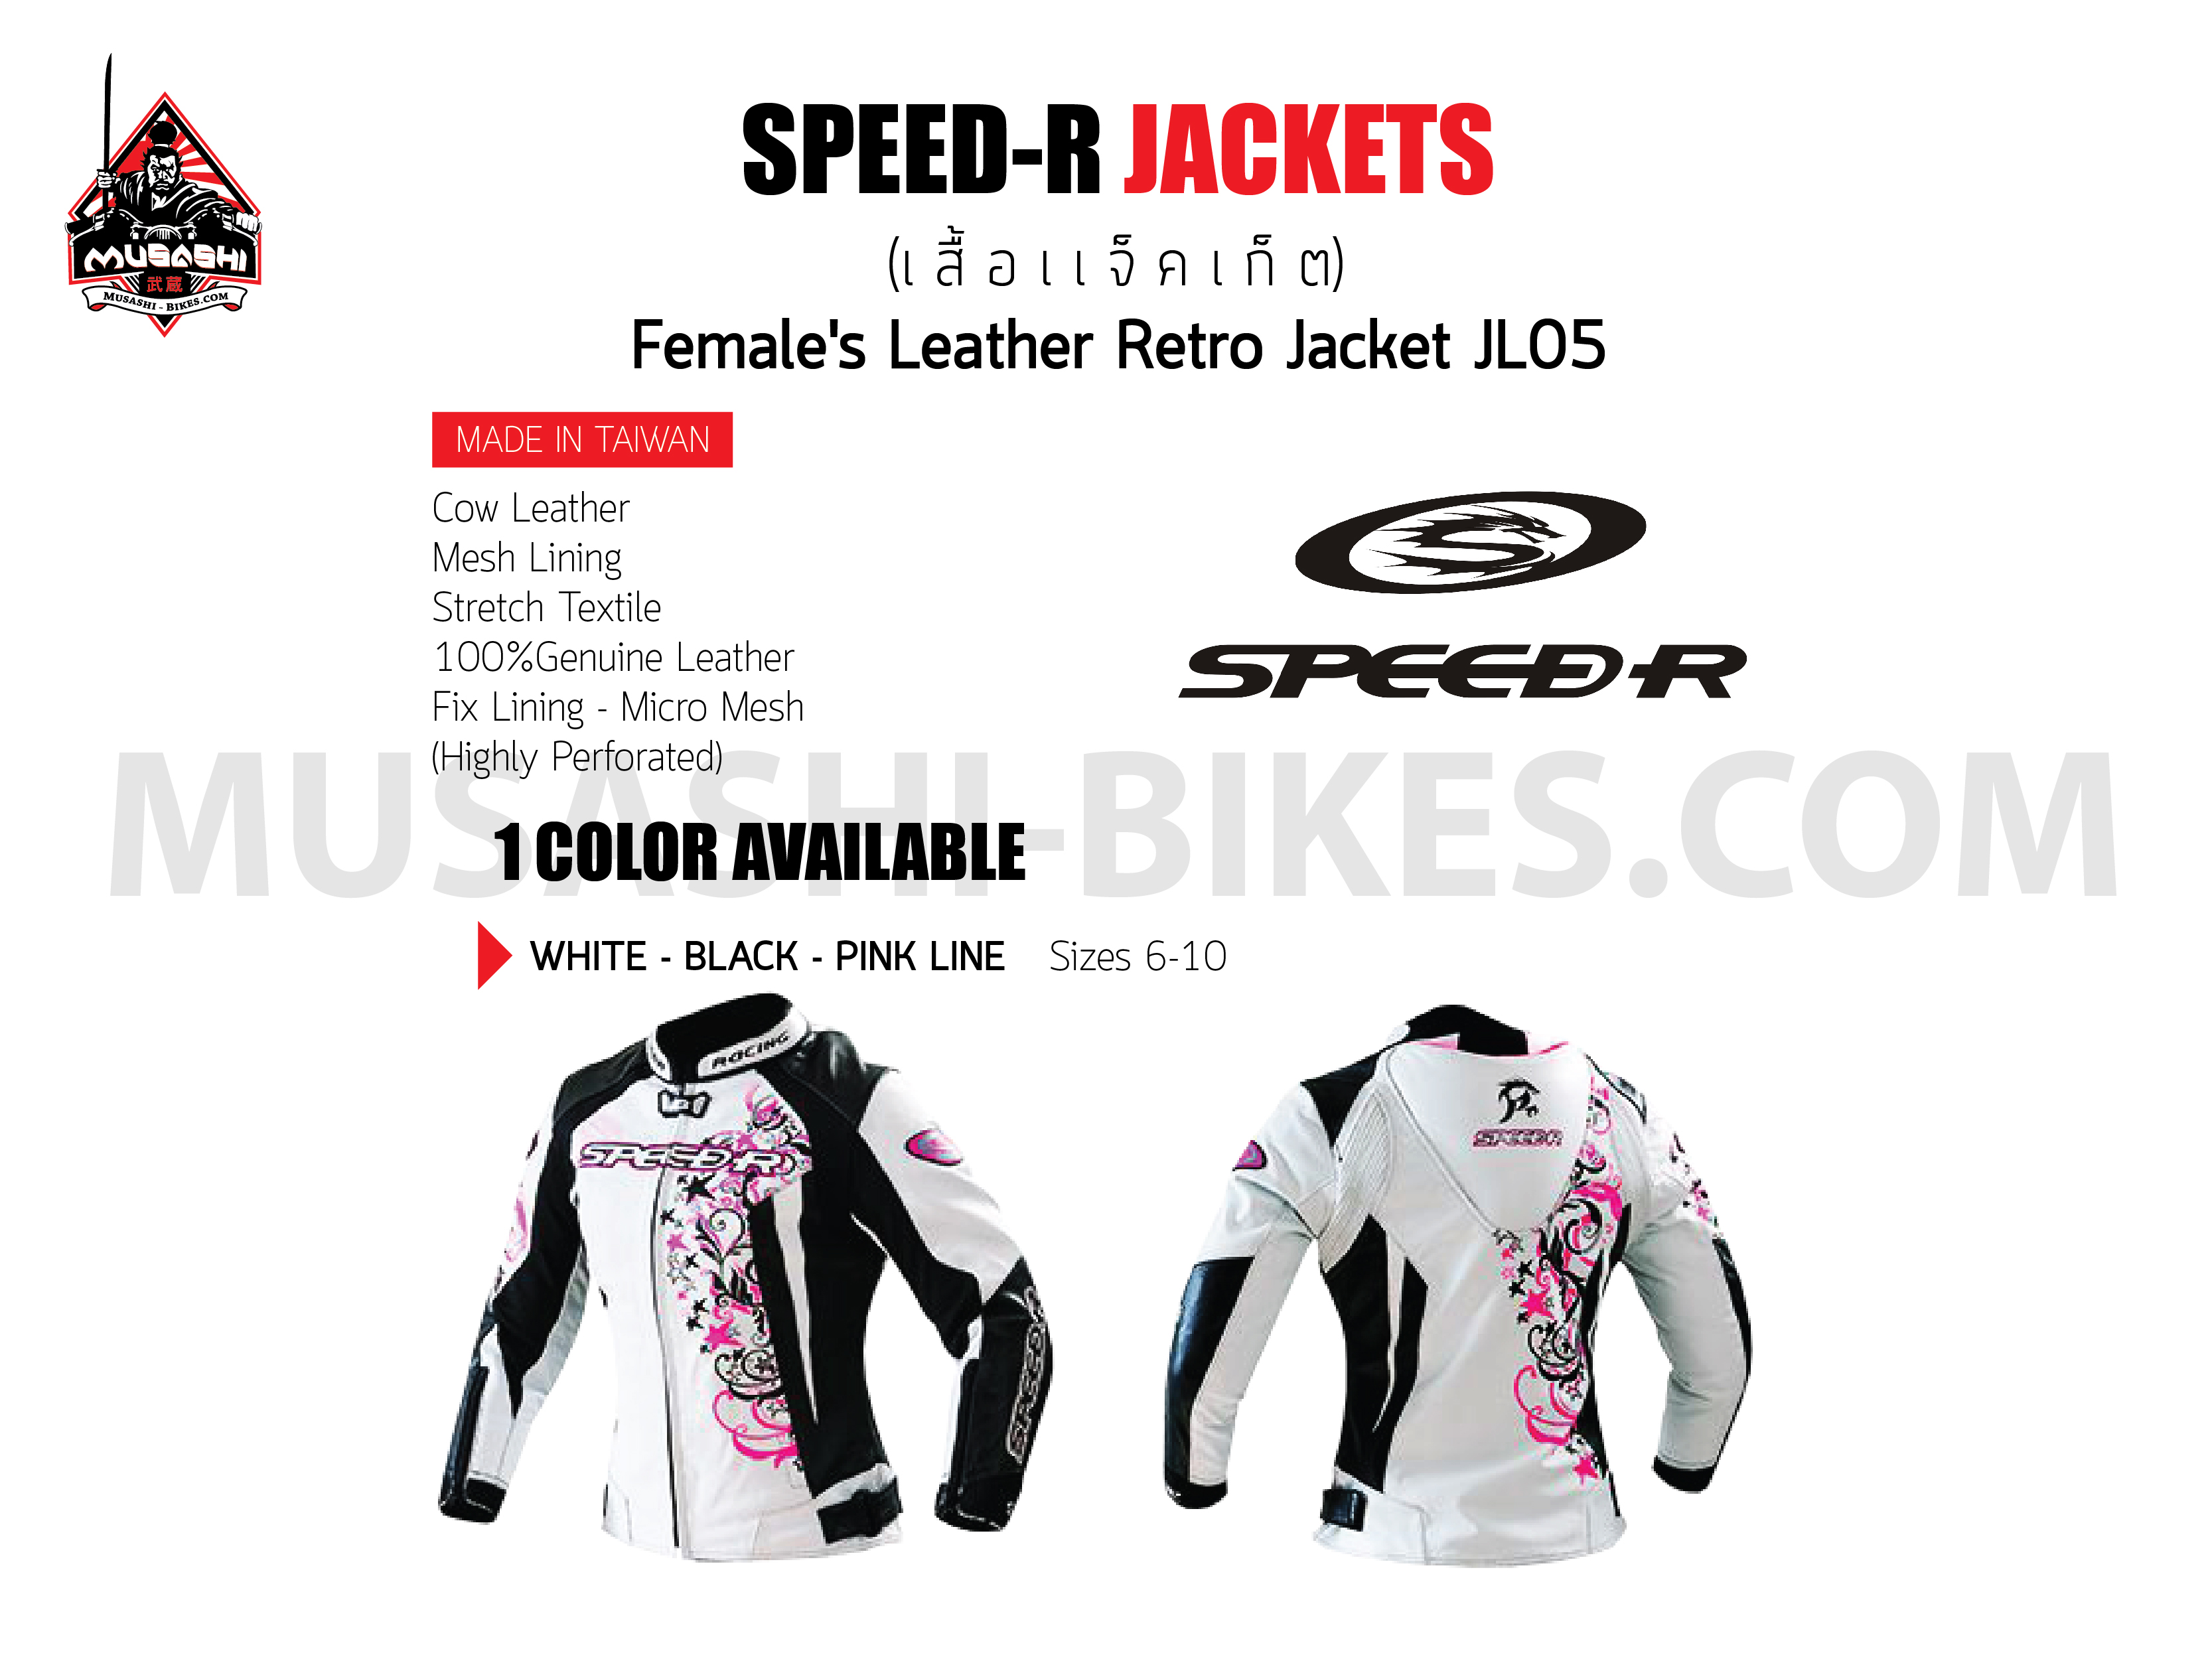 Female's Leather Retro Jacket JL05